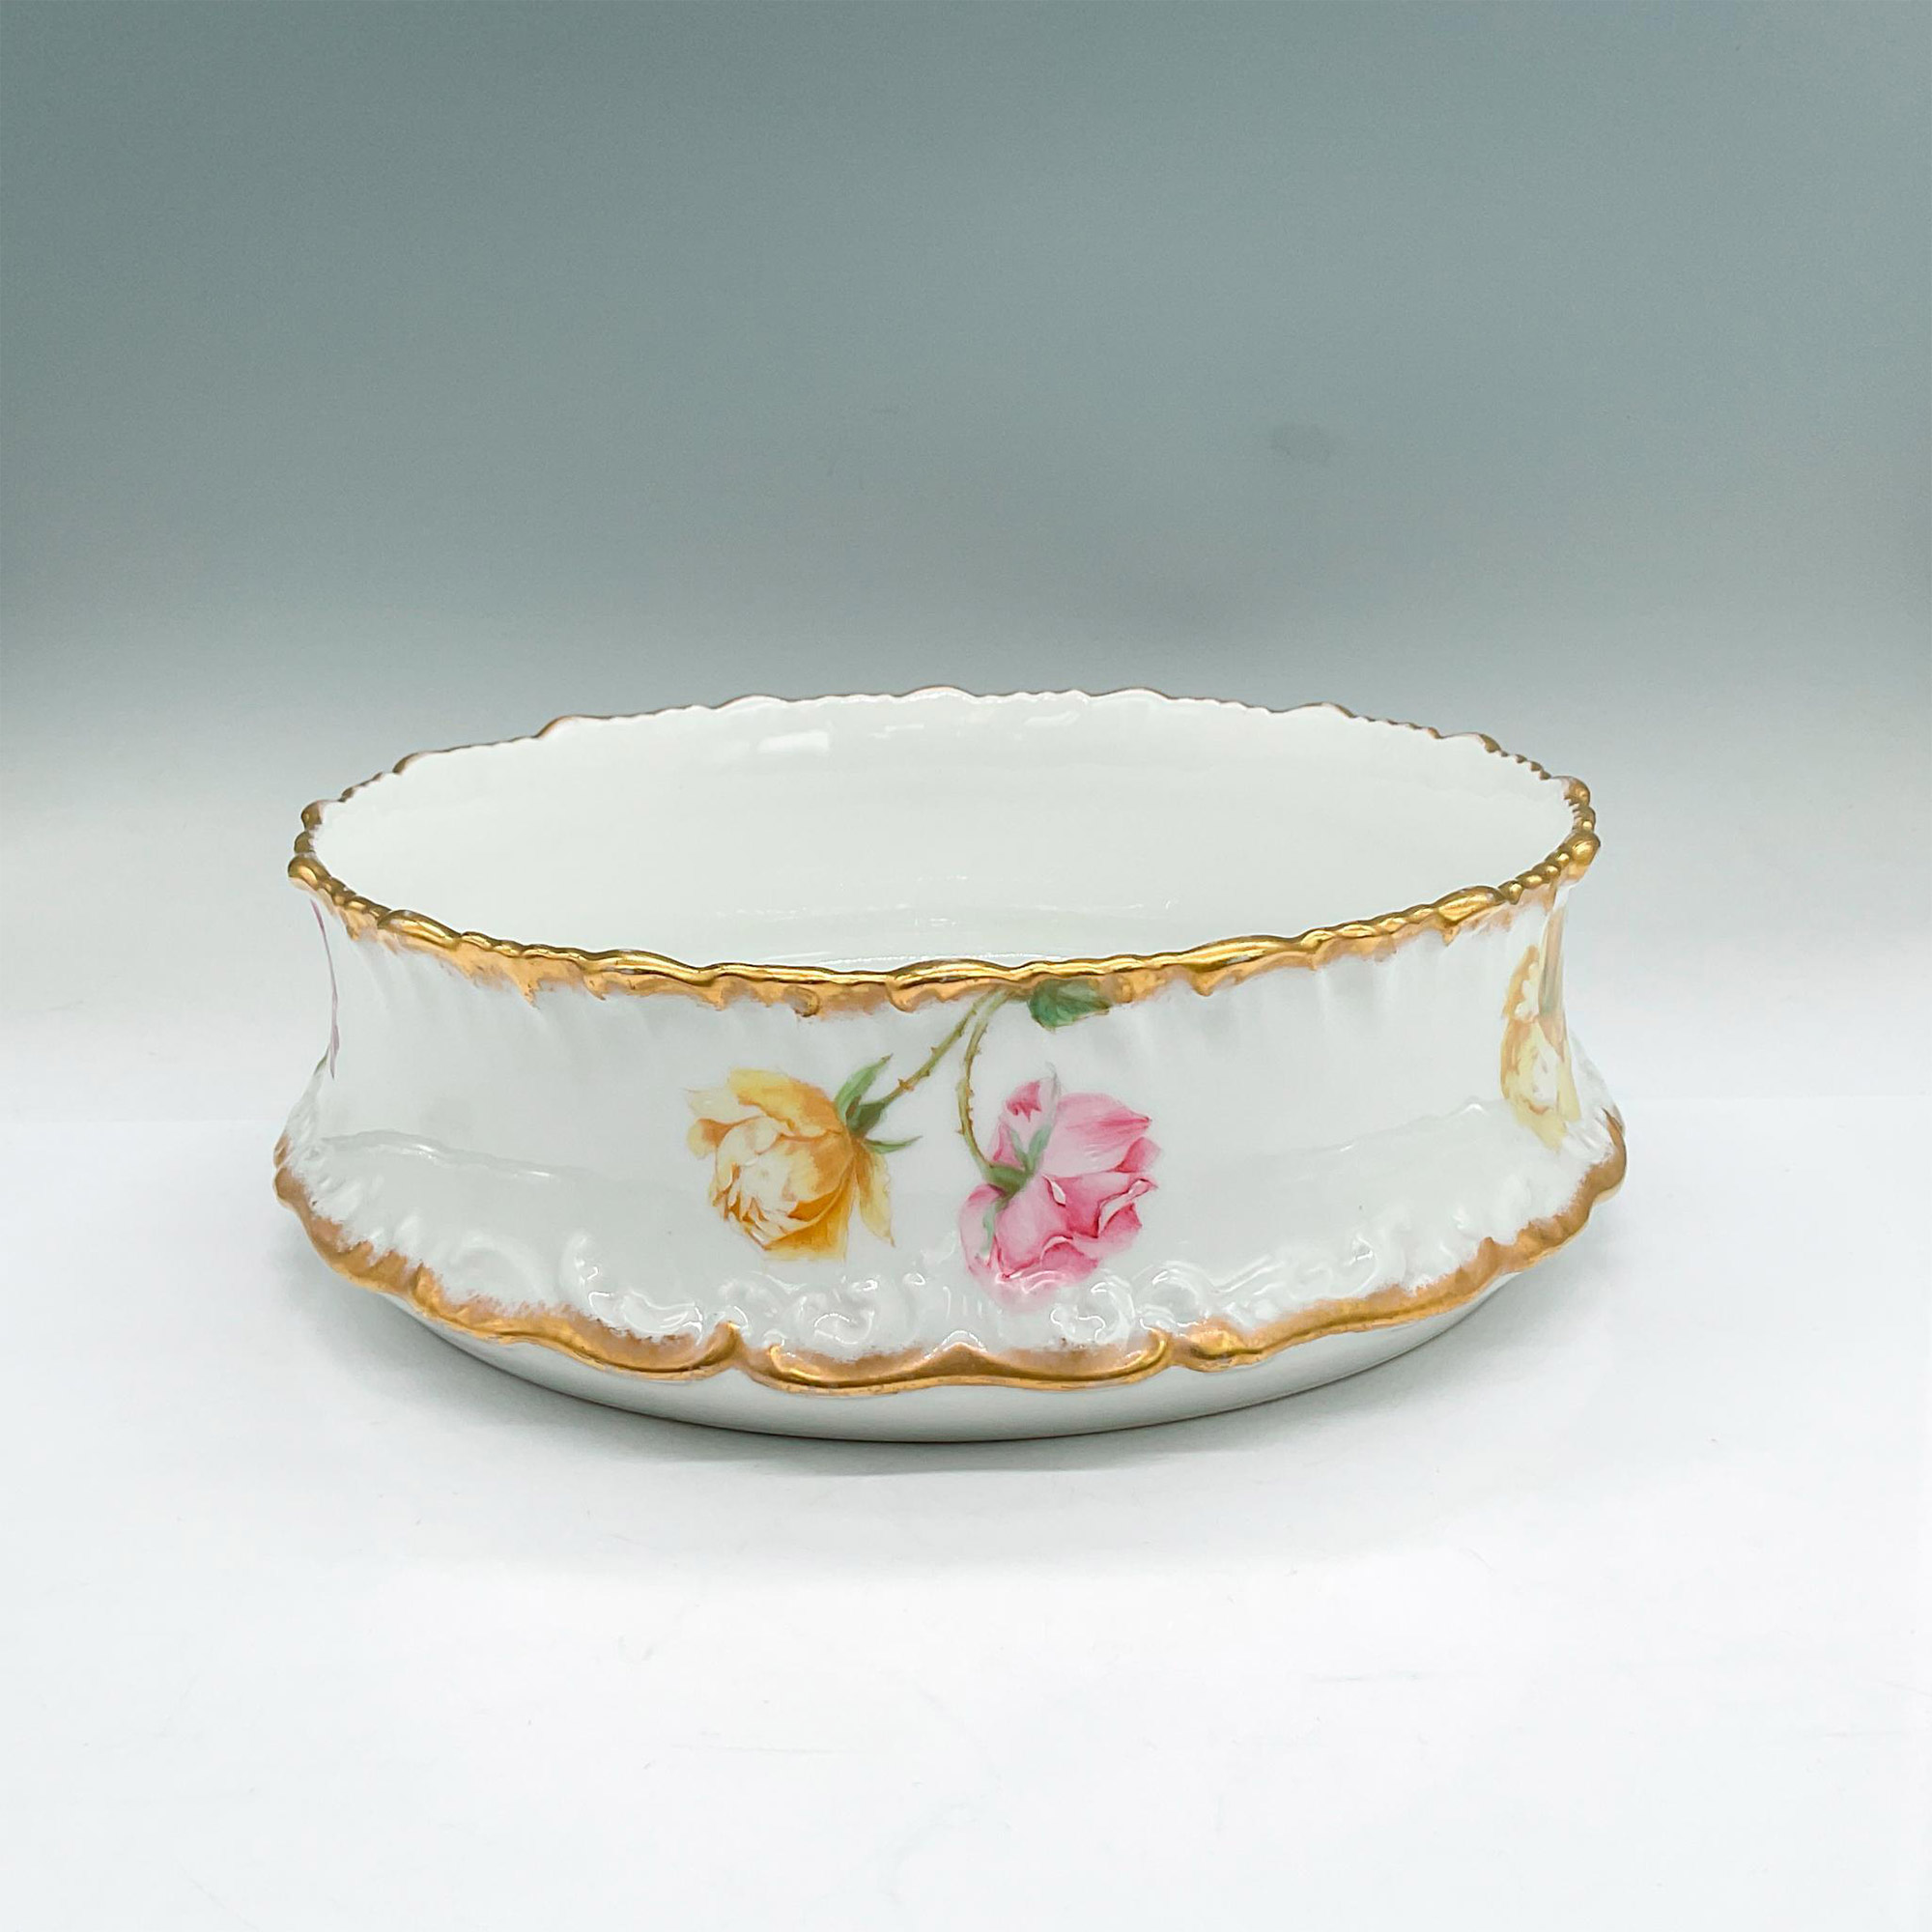 Tressemanes + Vogt Limoges Porcelain Bowl, Roses - Image 2 of 3